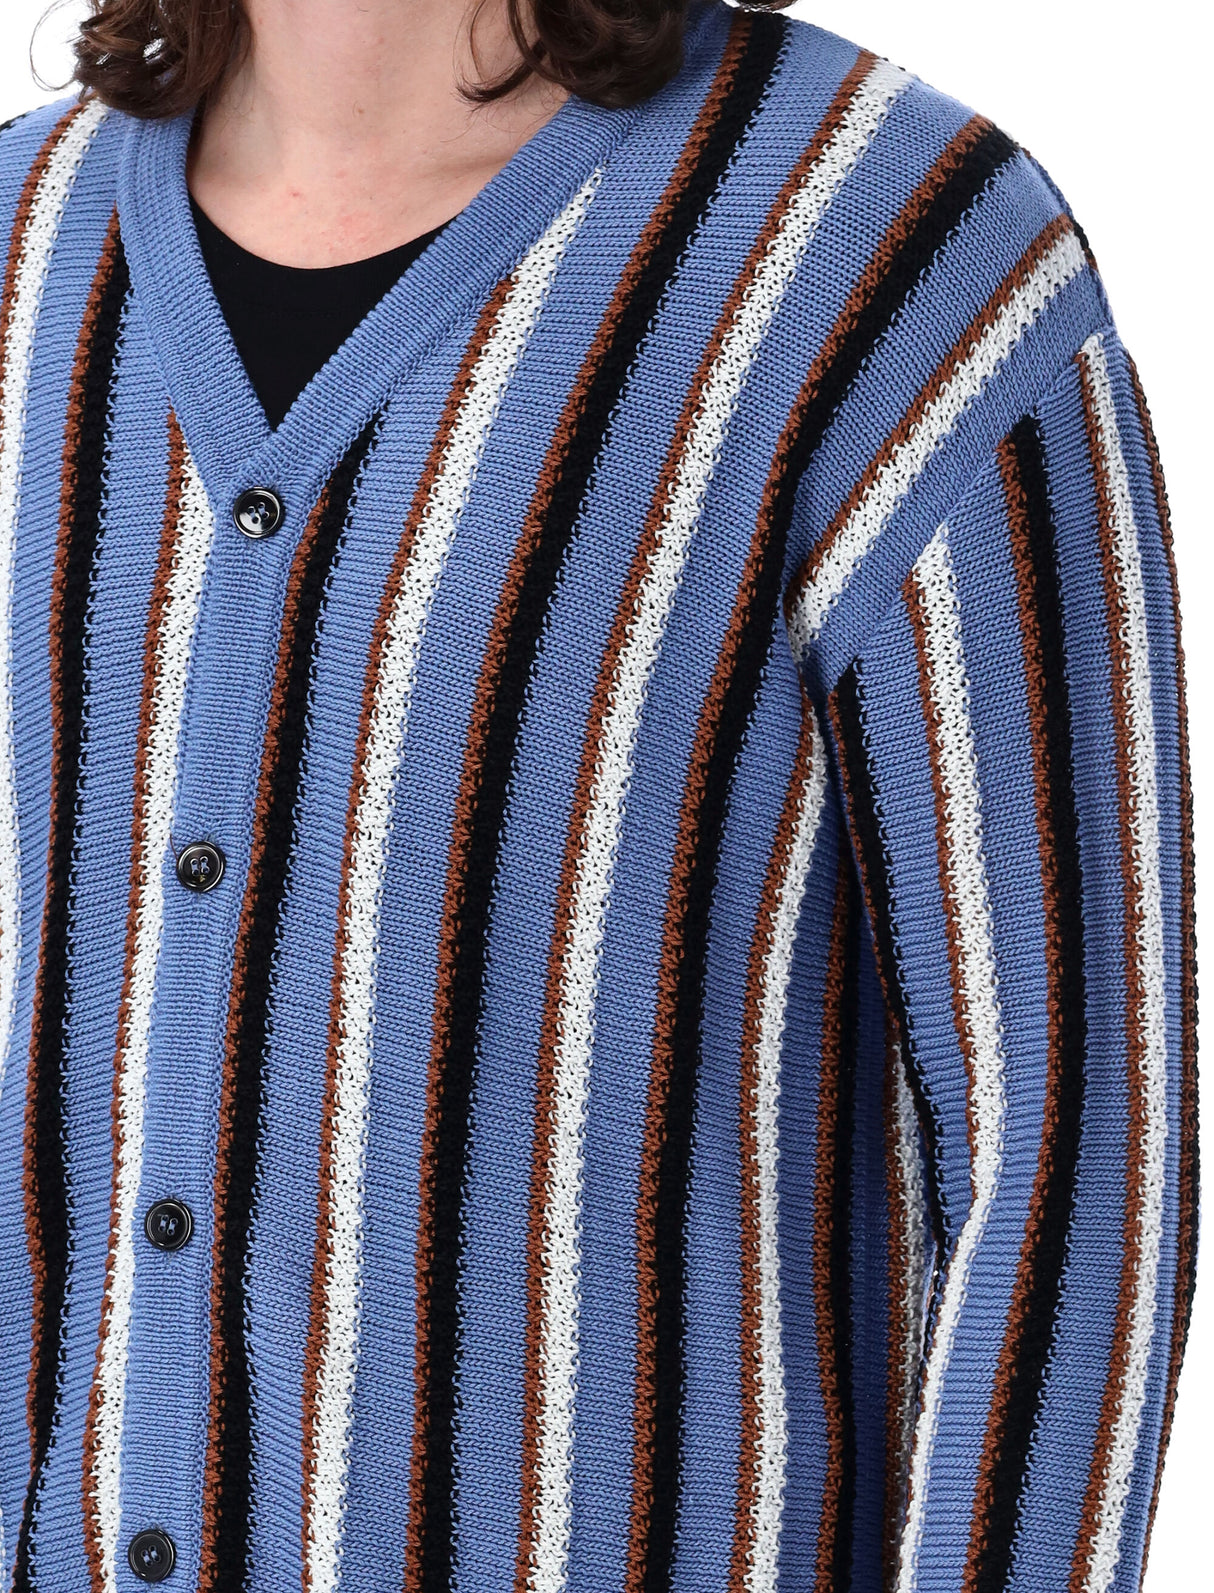 縱橫紋織針織羊毛開襟式男裝外套